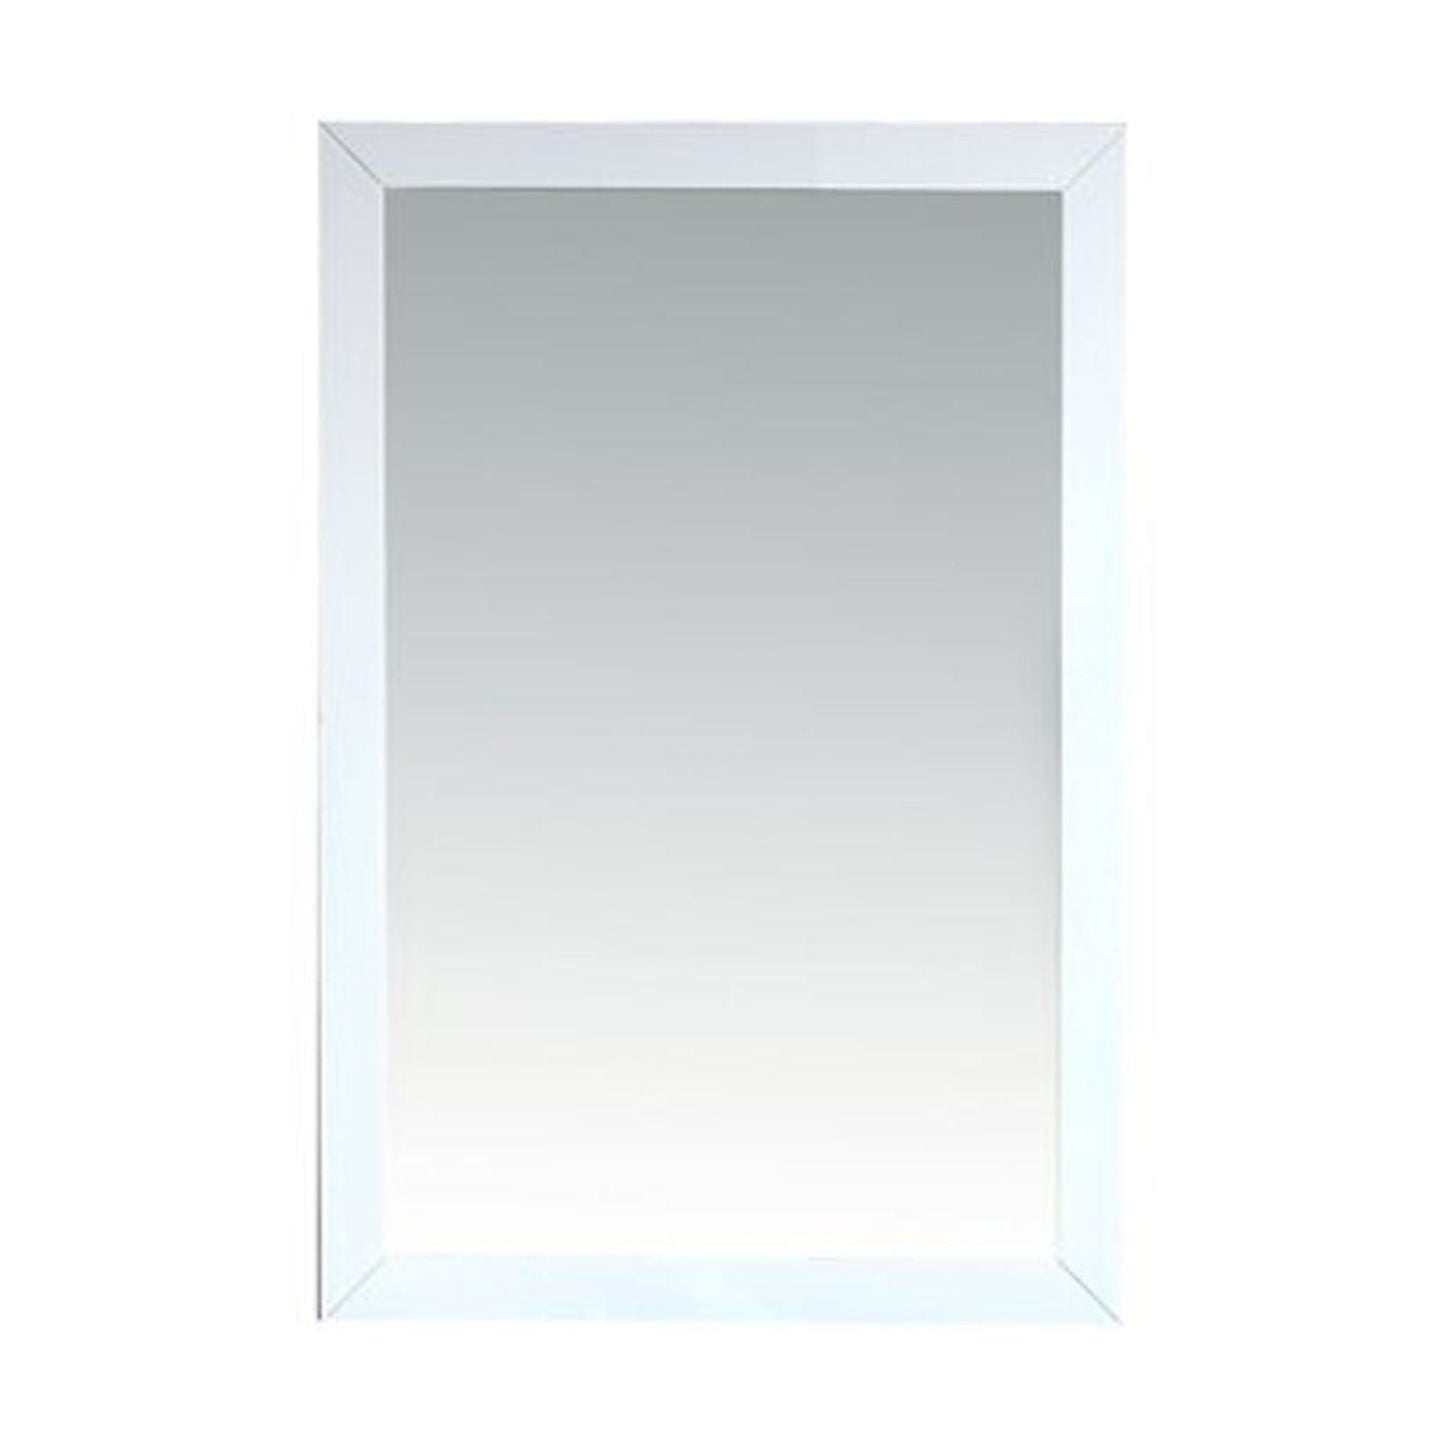 Laviva Sterling 24" White Fully Framed Rectangular Mirror